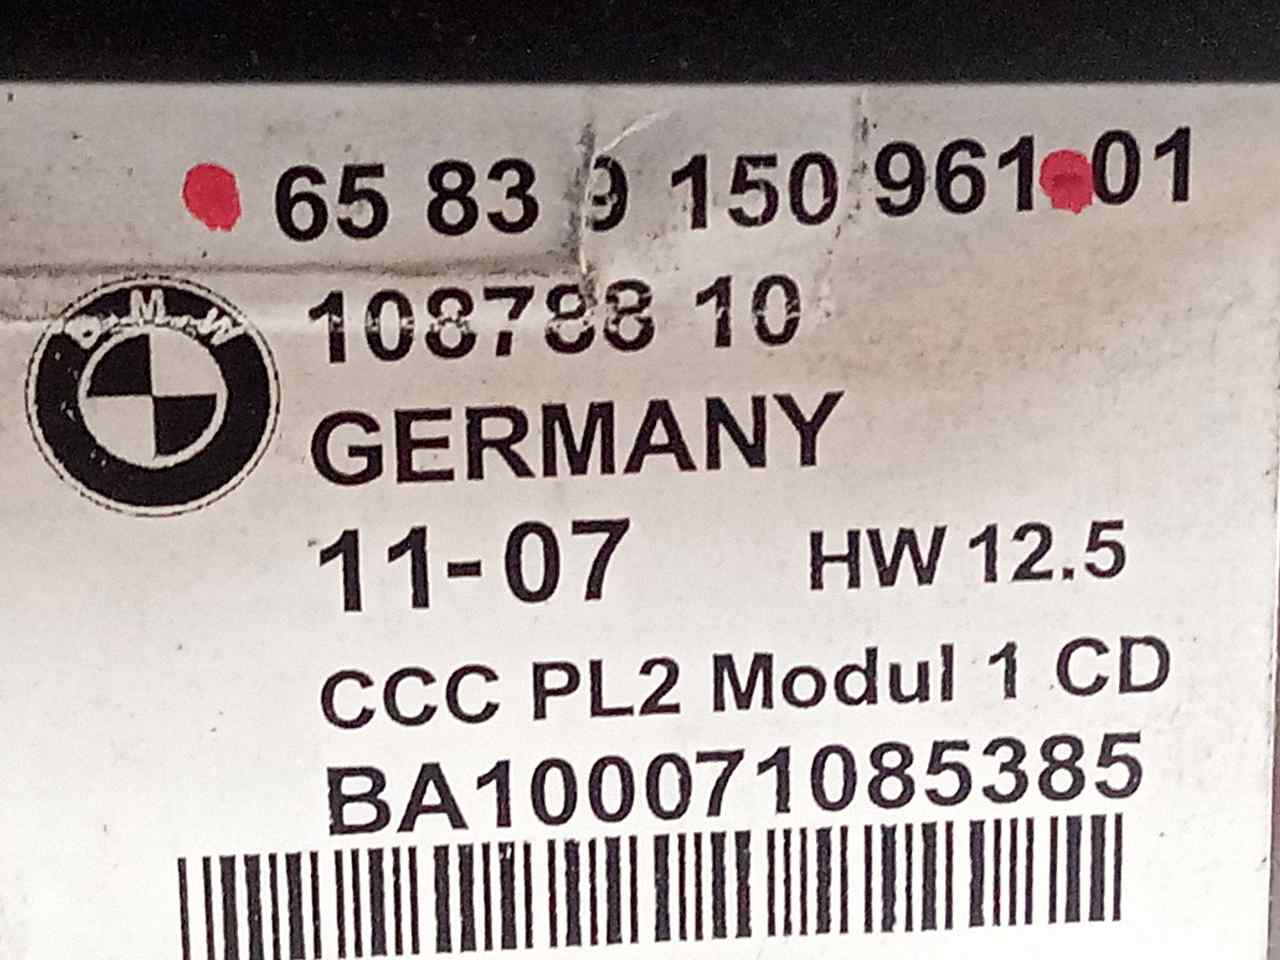 BMW 3 Series E90/E91/E92/E93 (2004-2013) Hudební přehrávač bez GPS 65839150961 24851871